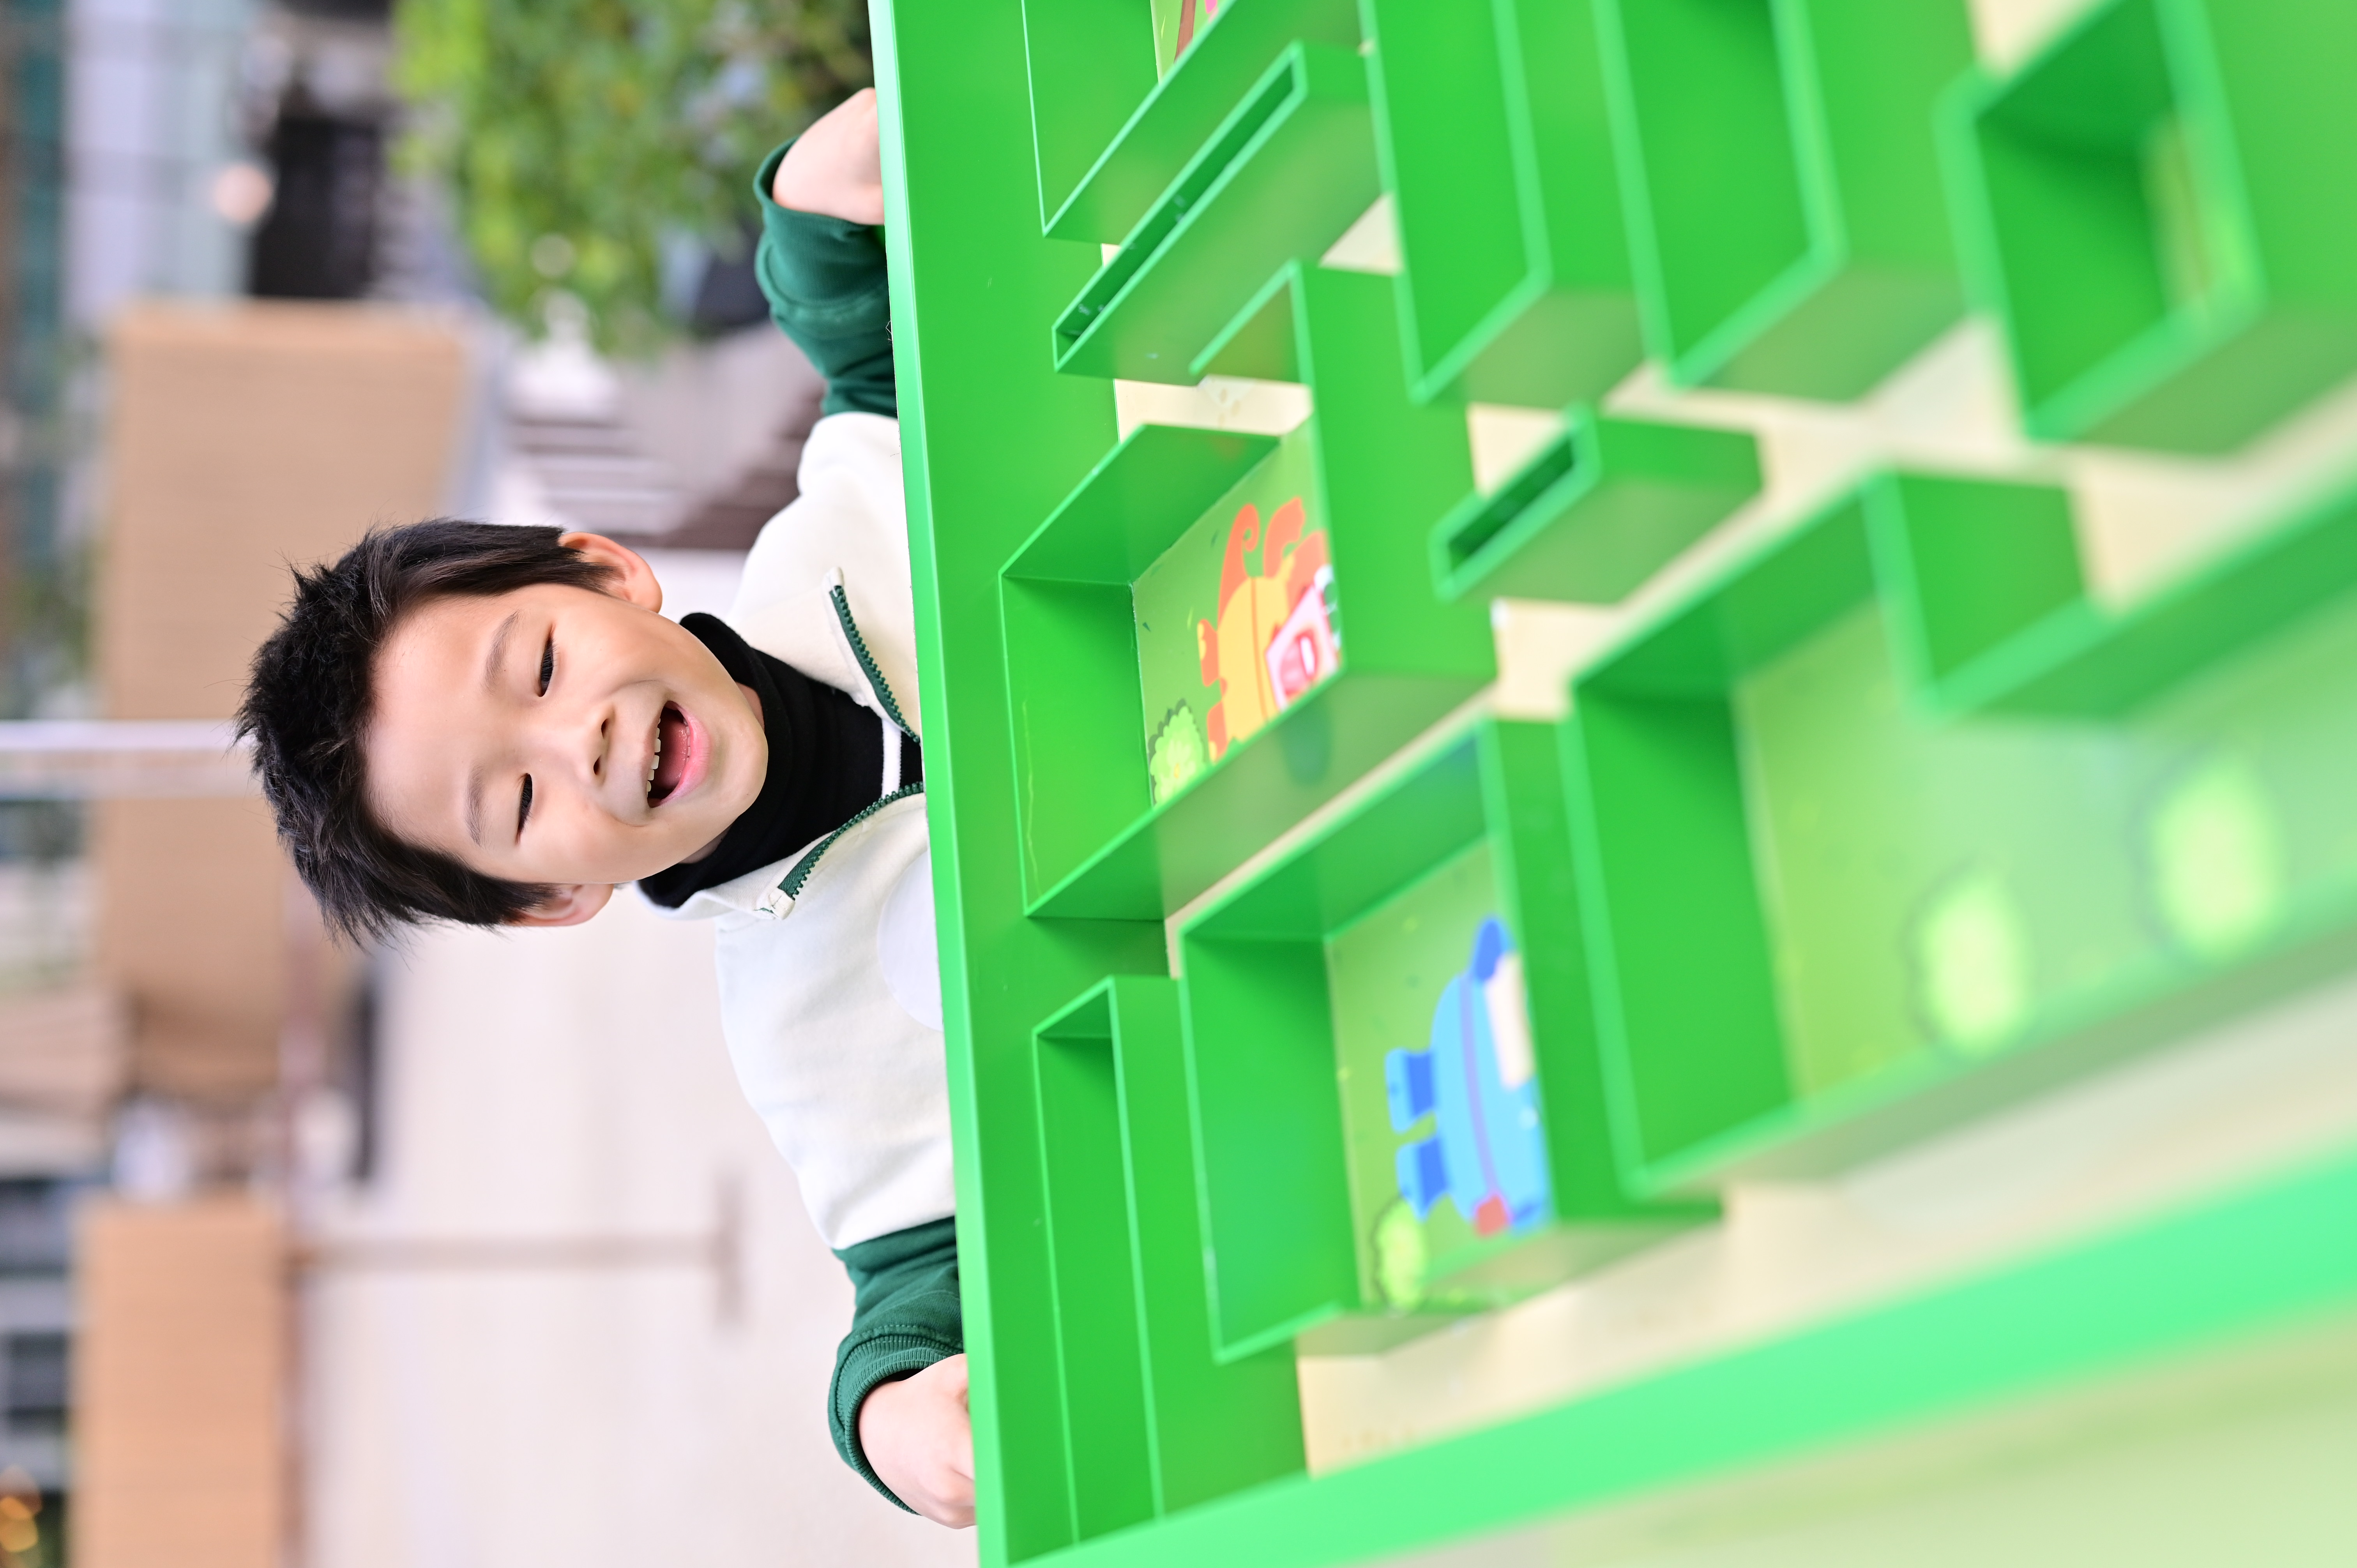 遊戲攤位-移動小迷宮-讓小朋友投入思考與手感控制的快樂.JPG